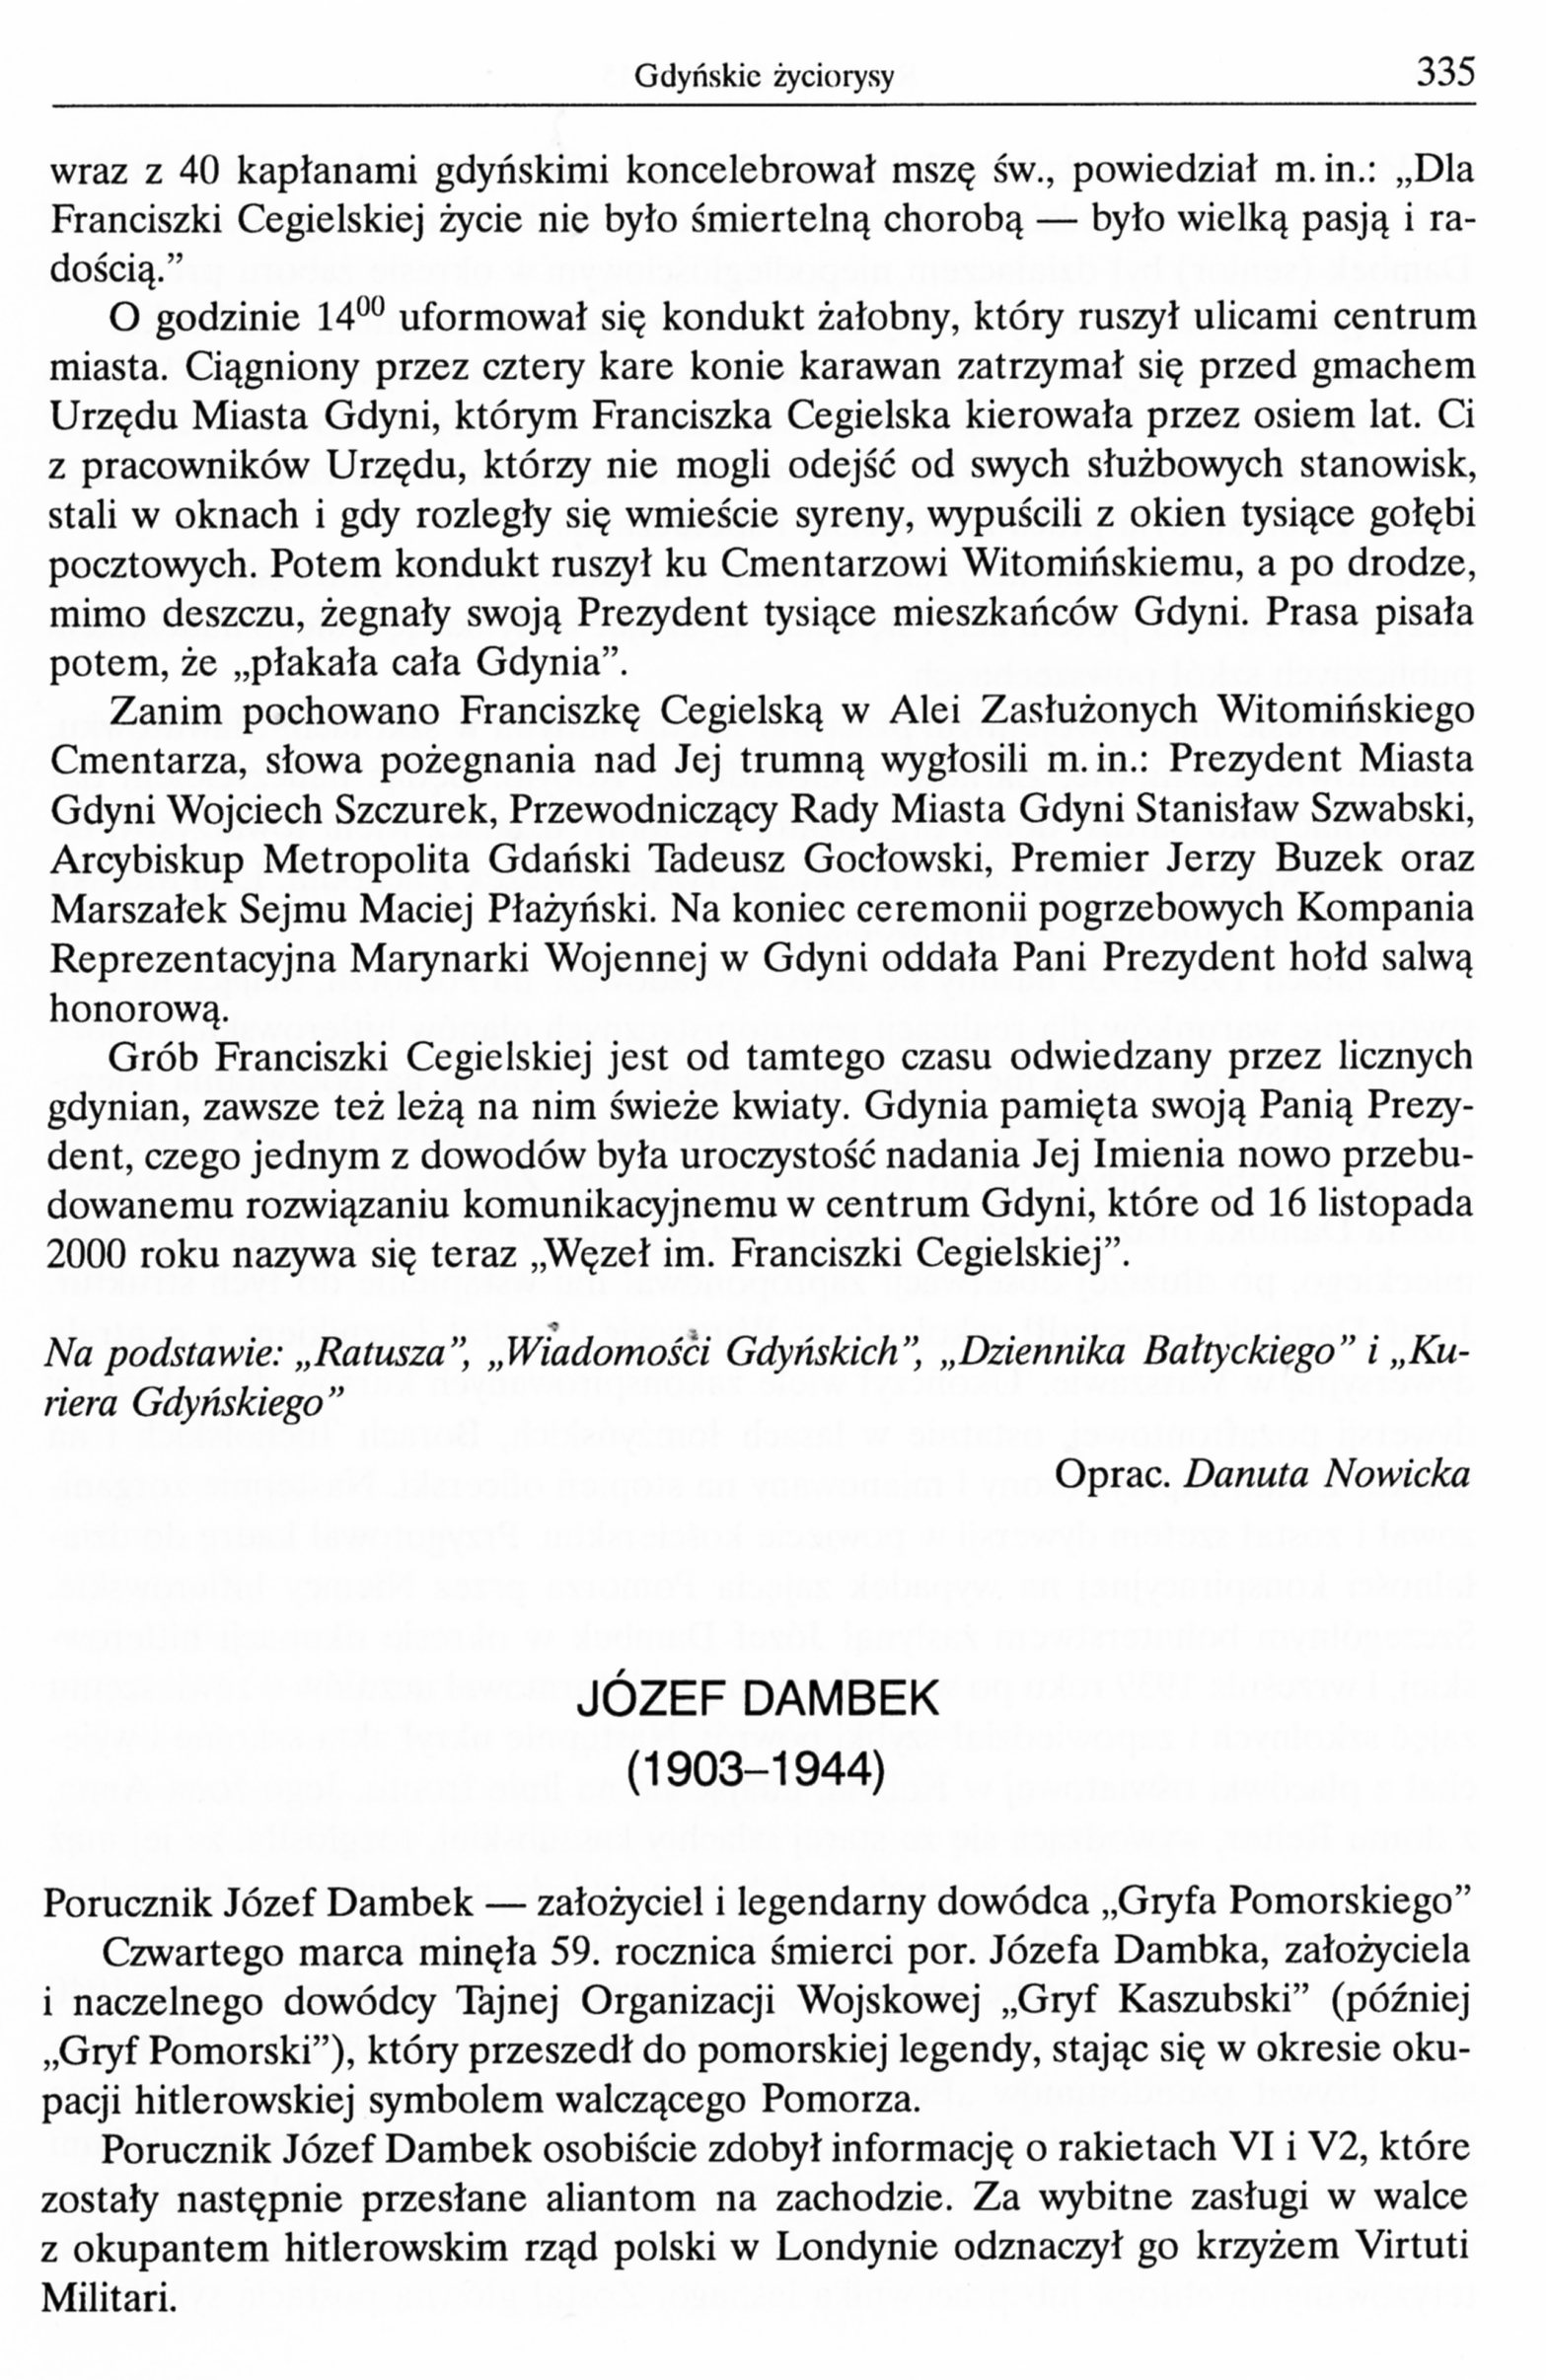 Józef Dambek (1903-1944)